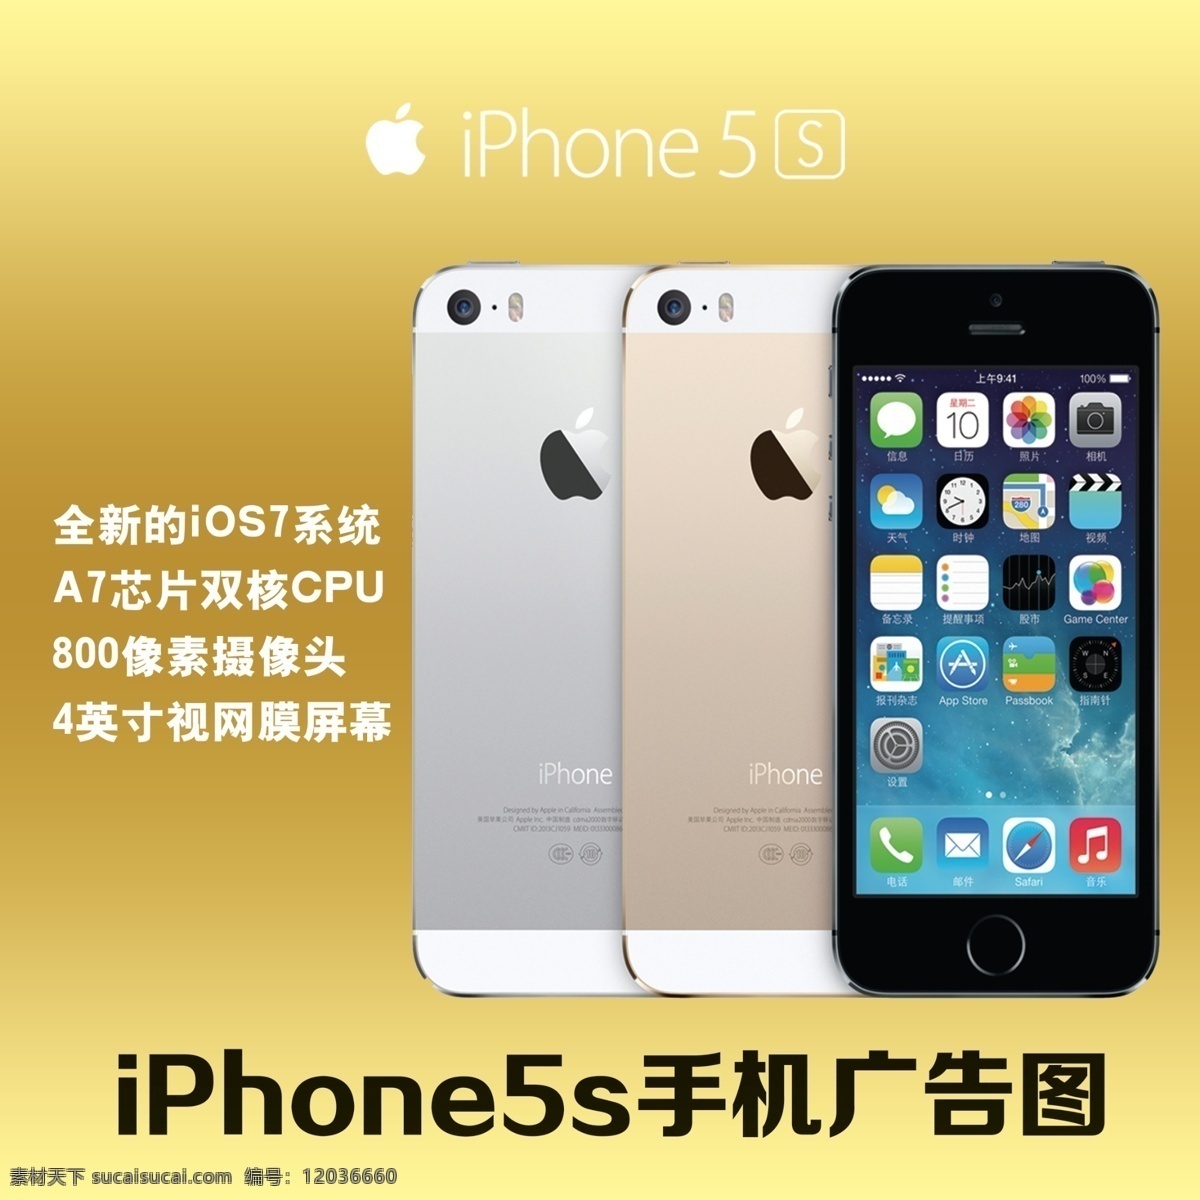 苹果 iphone5s 产品展示 苹果5s 手机 高清 分层 高档 新款 美国 科技 数码 设计广告 信息 热卖 广告图 现代科技 数码产品 黄色